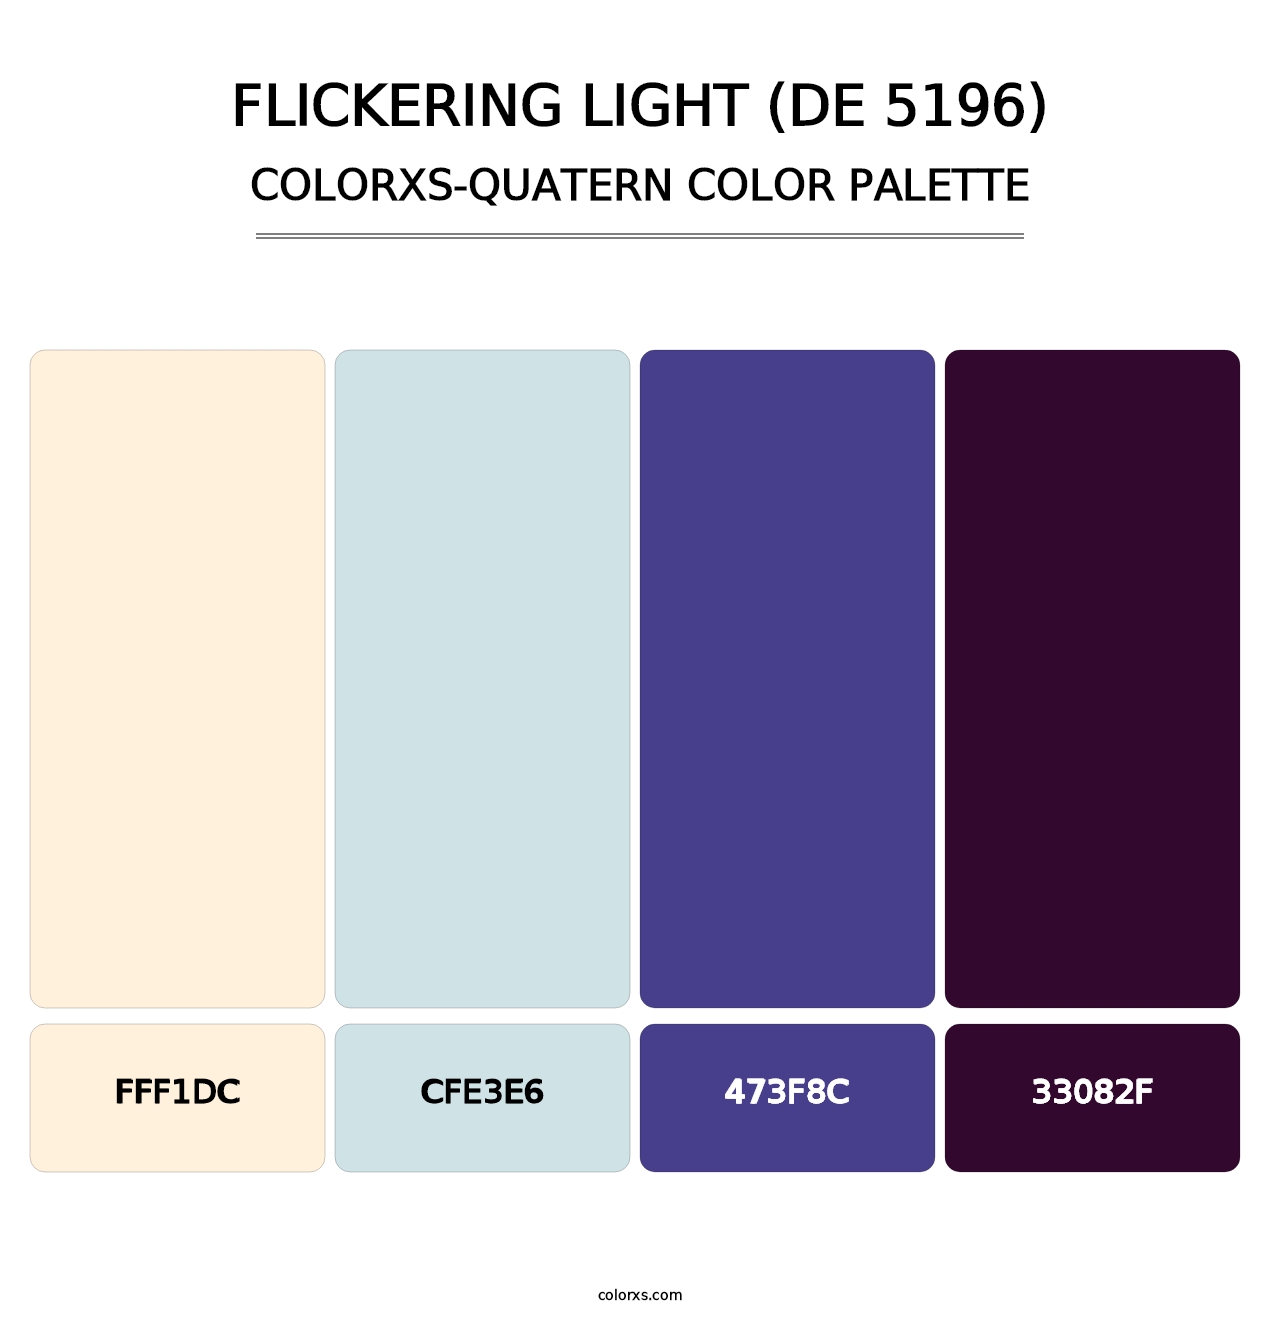 Flickering Light (DE 5196) - Colorxs Quatern Palette